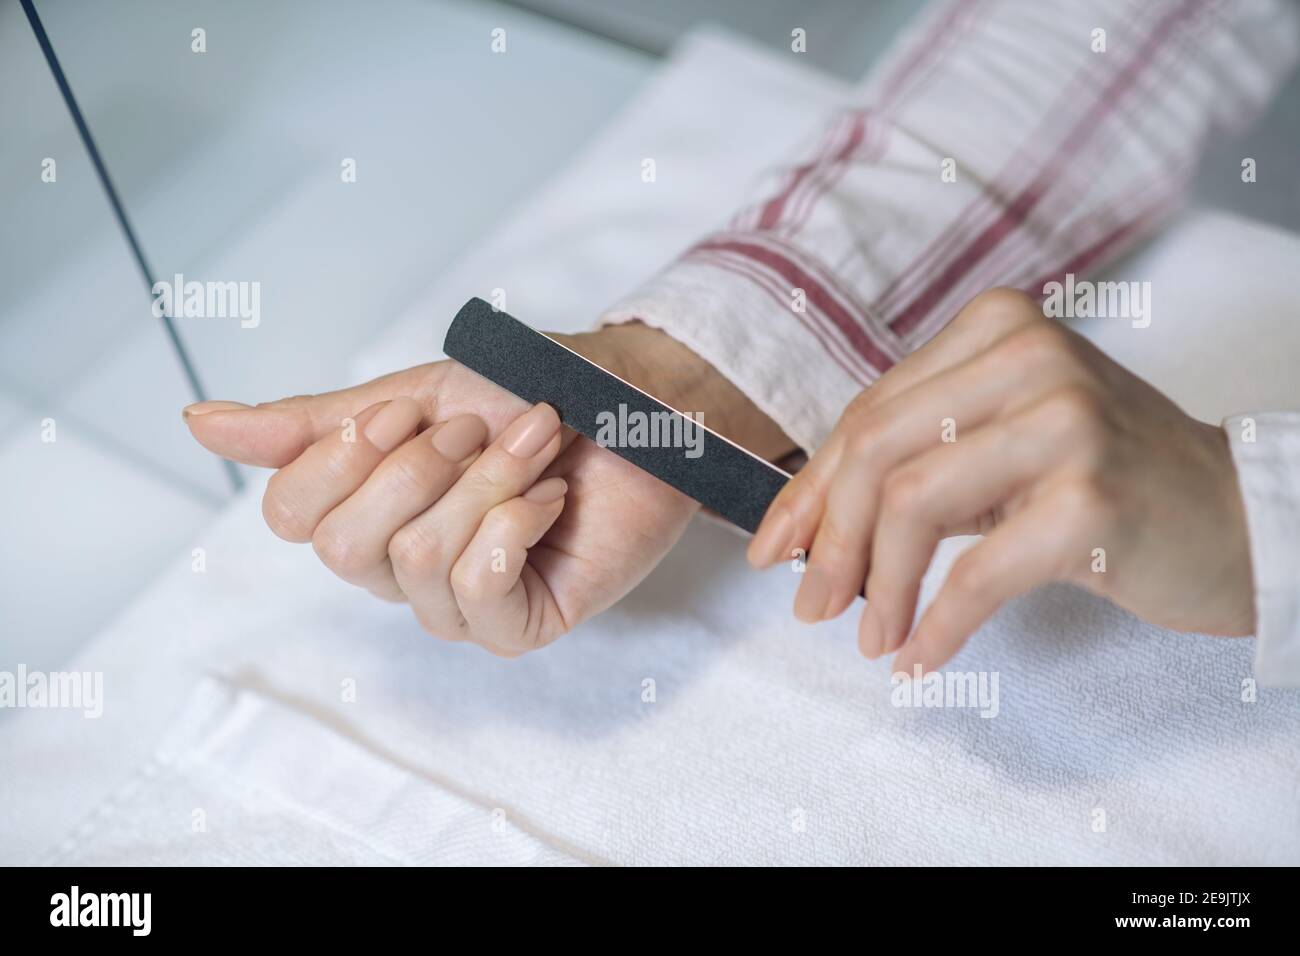 Primo piano immagine di mani femmina limando unghie Foto Stock